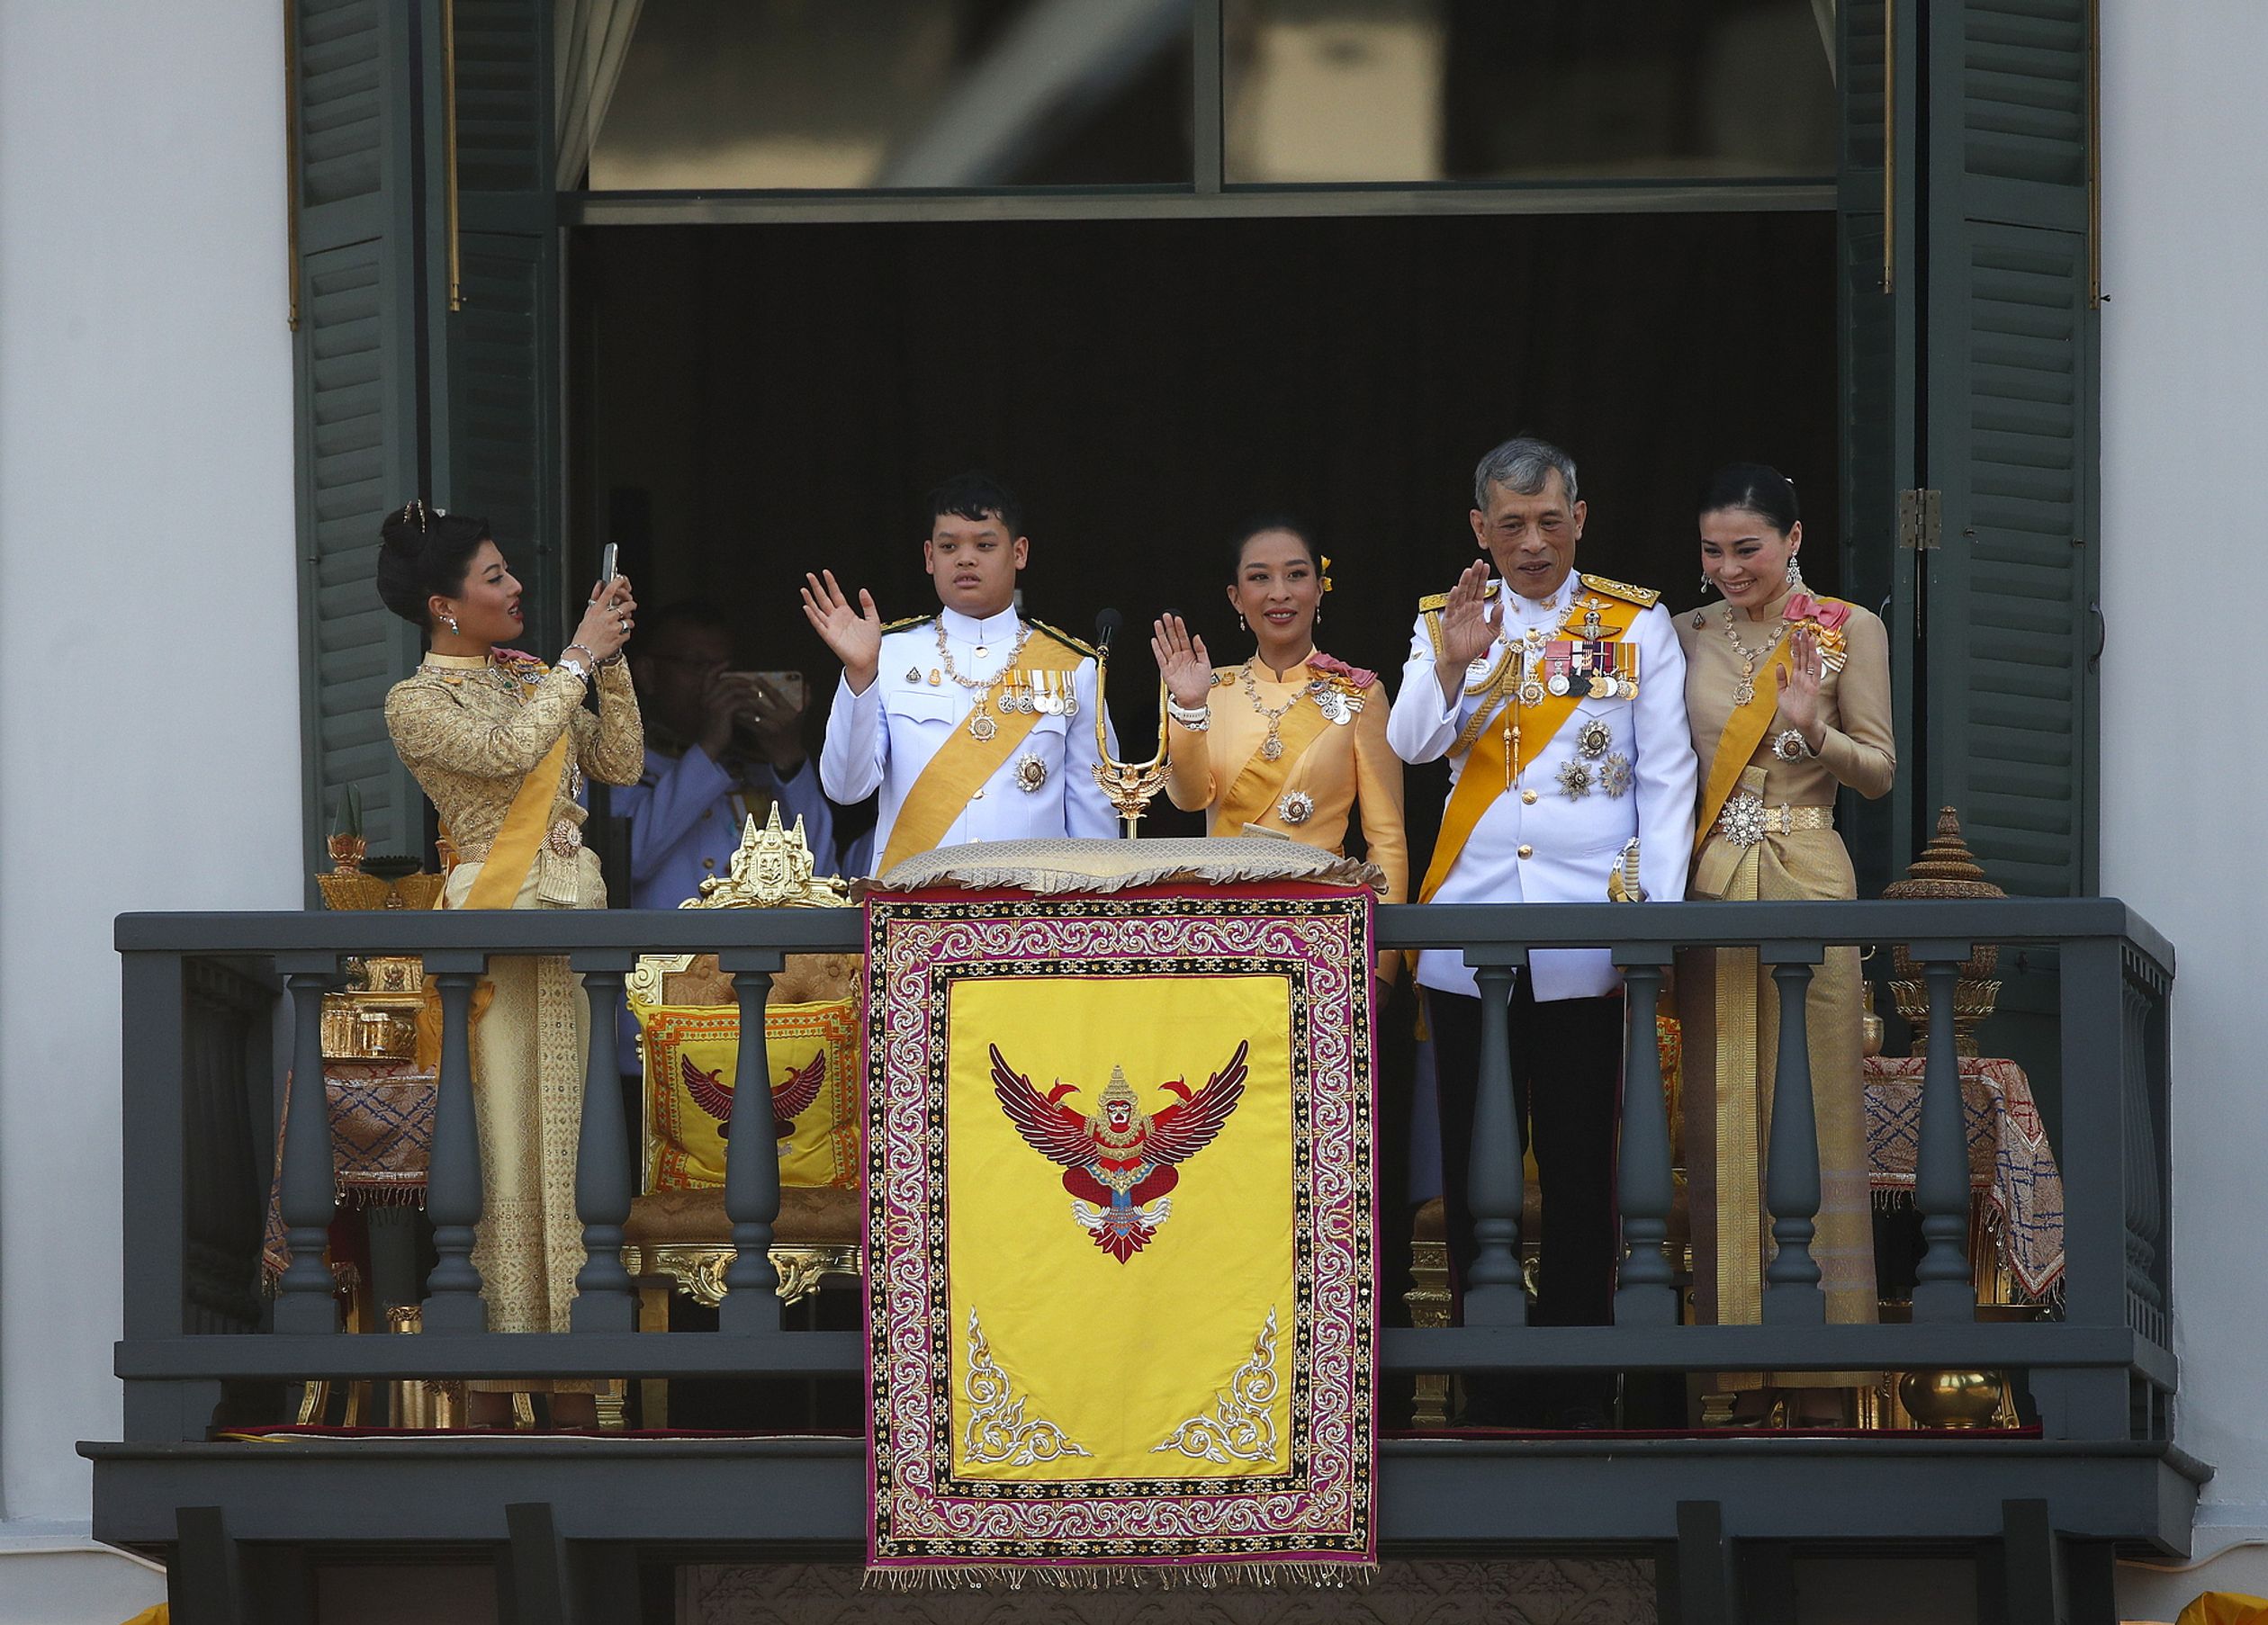 Links van de Thaise koning staan drie van zijn kinderen: prinses Sirivannavari Nariratana, prins